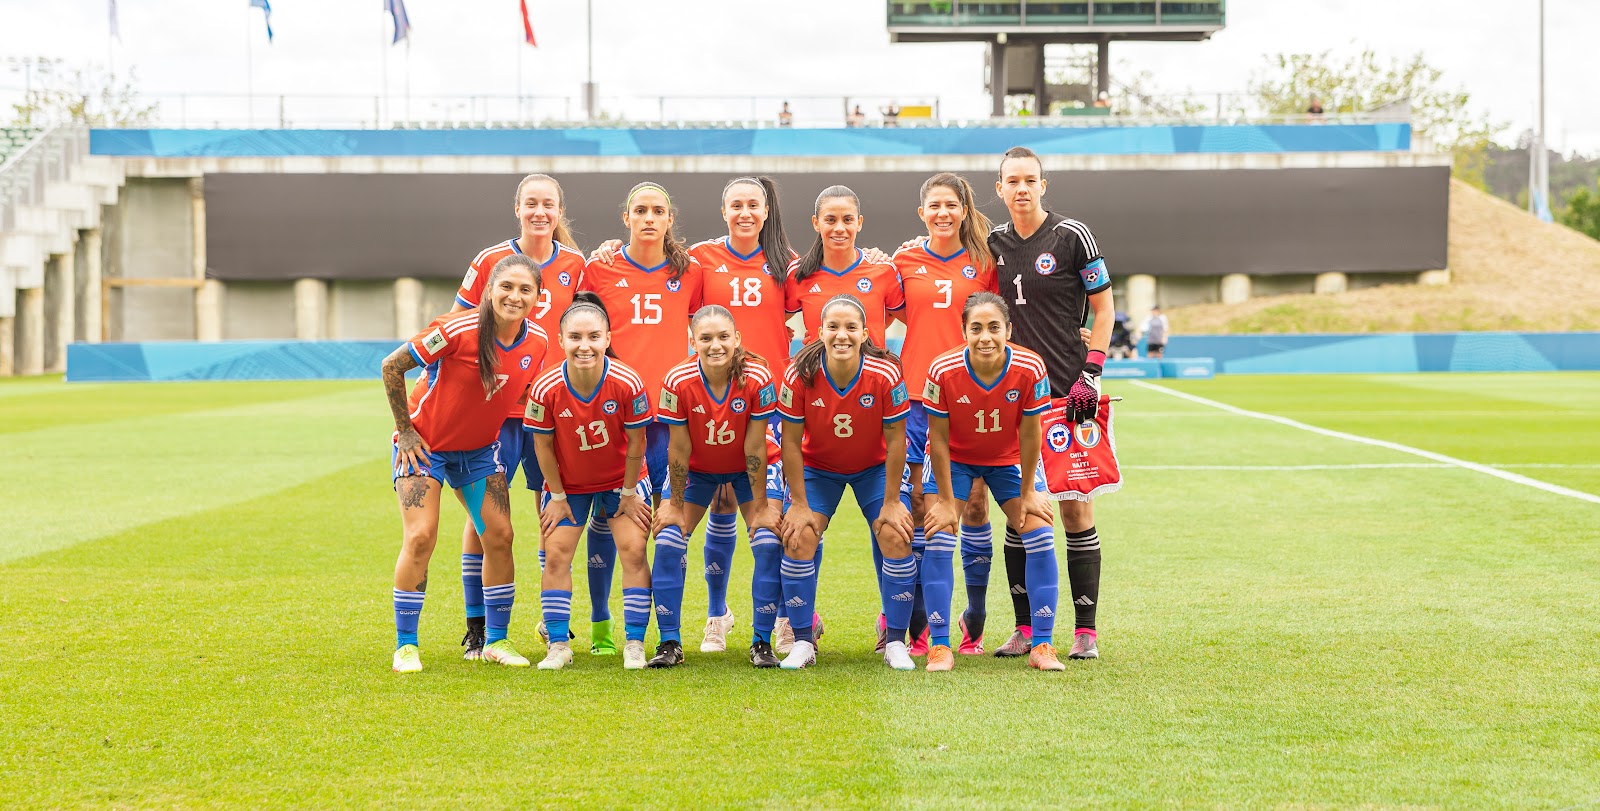 Formación de selección femenina de Chile ante Haití, torneo de repechaje a Copa Mundial Femenina de Fútbol Australia/Nueva Zelanda 2023, 21 de febrero